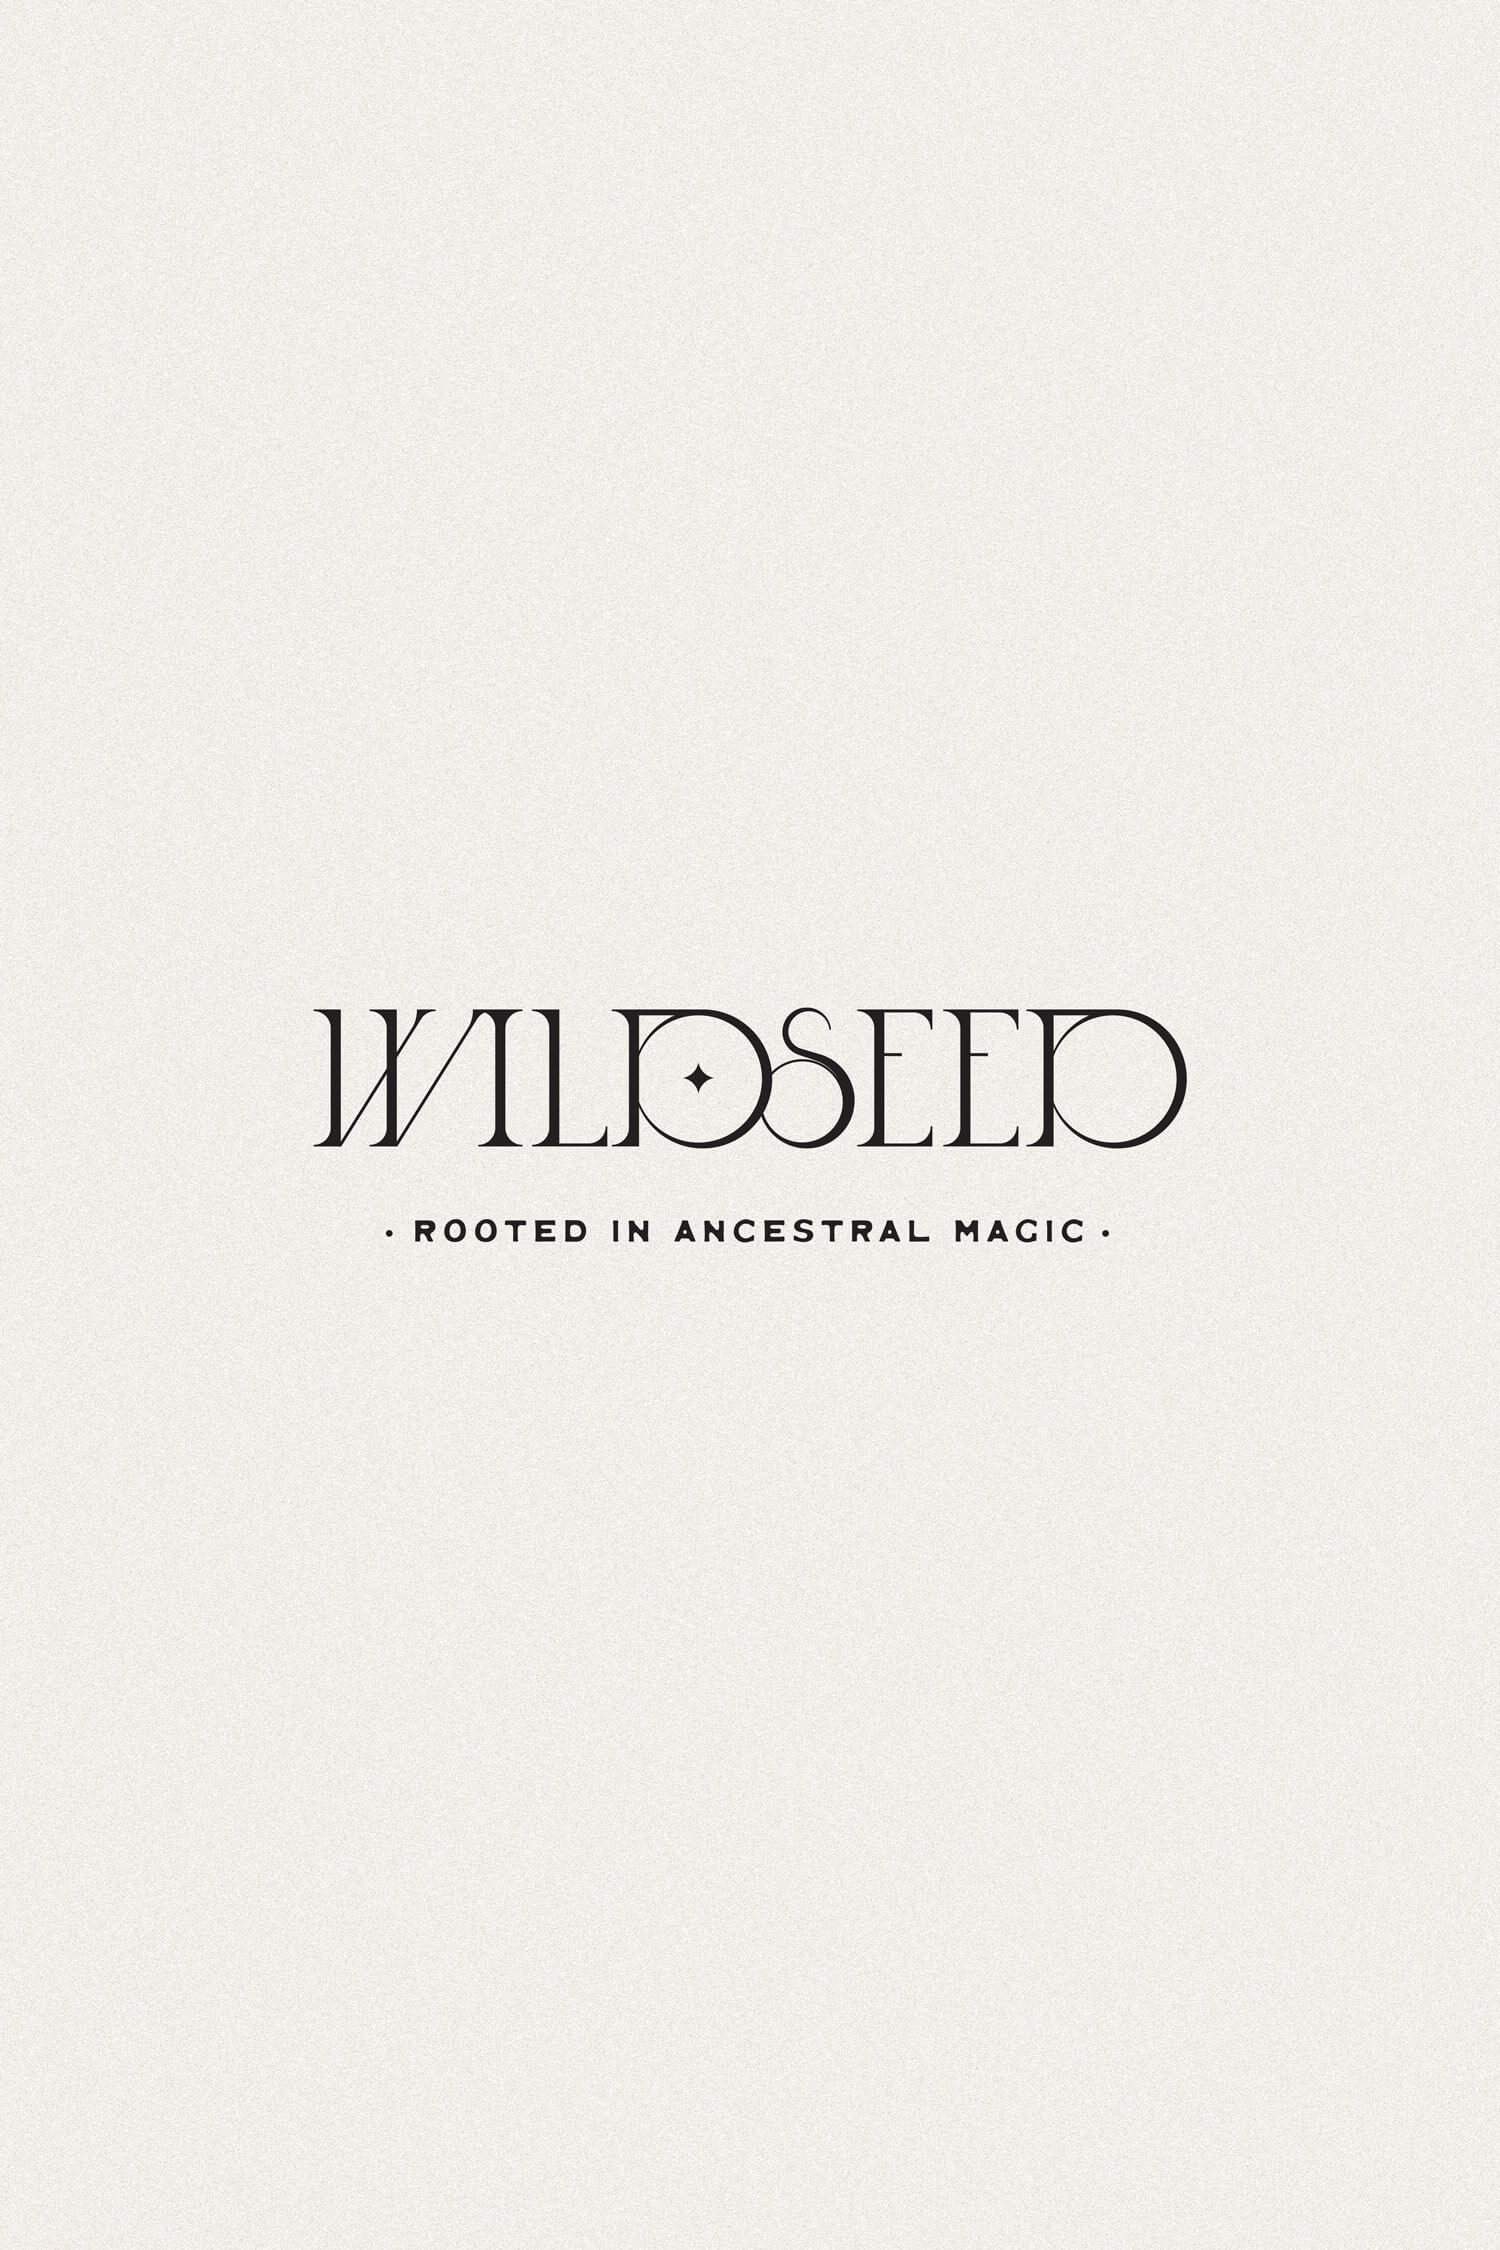 wildseed-casestudy7